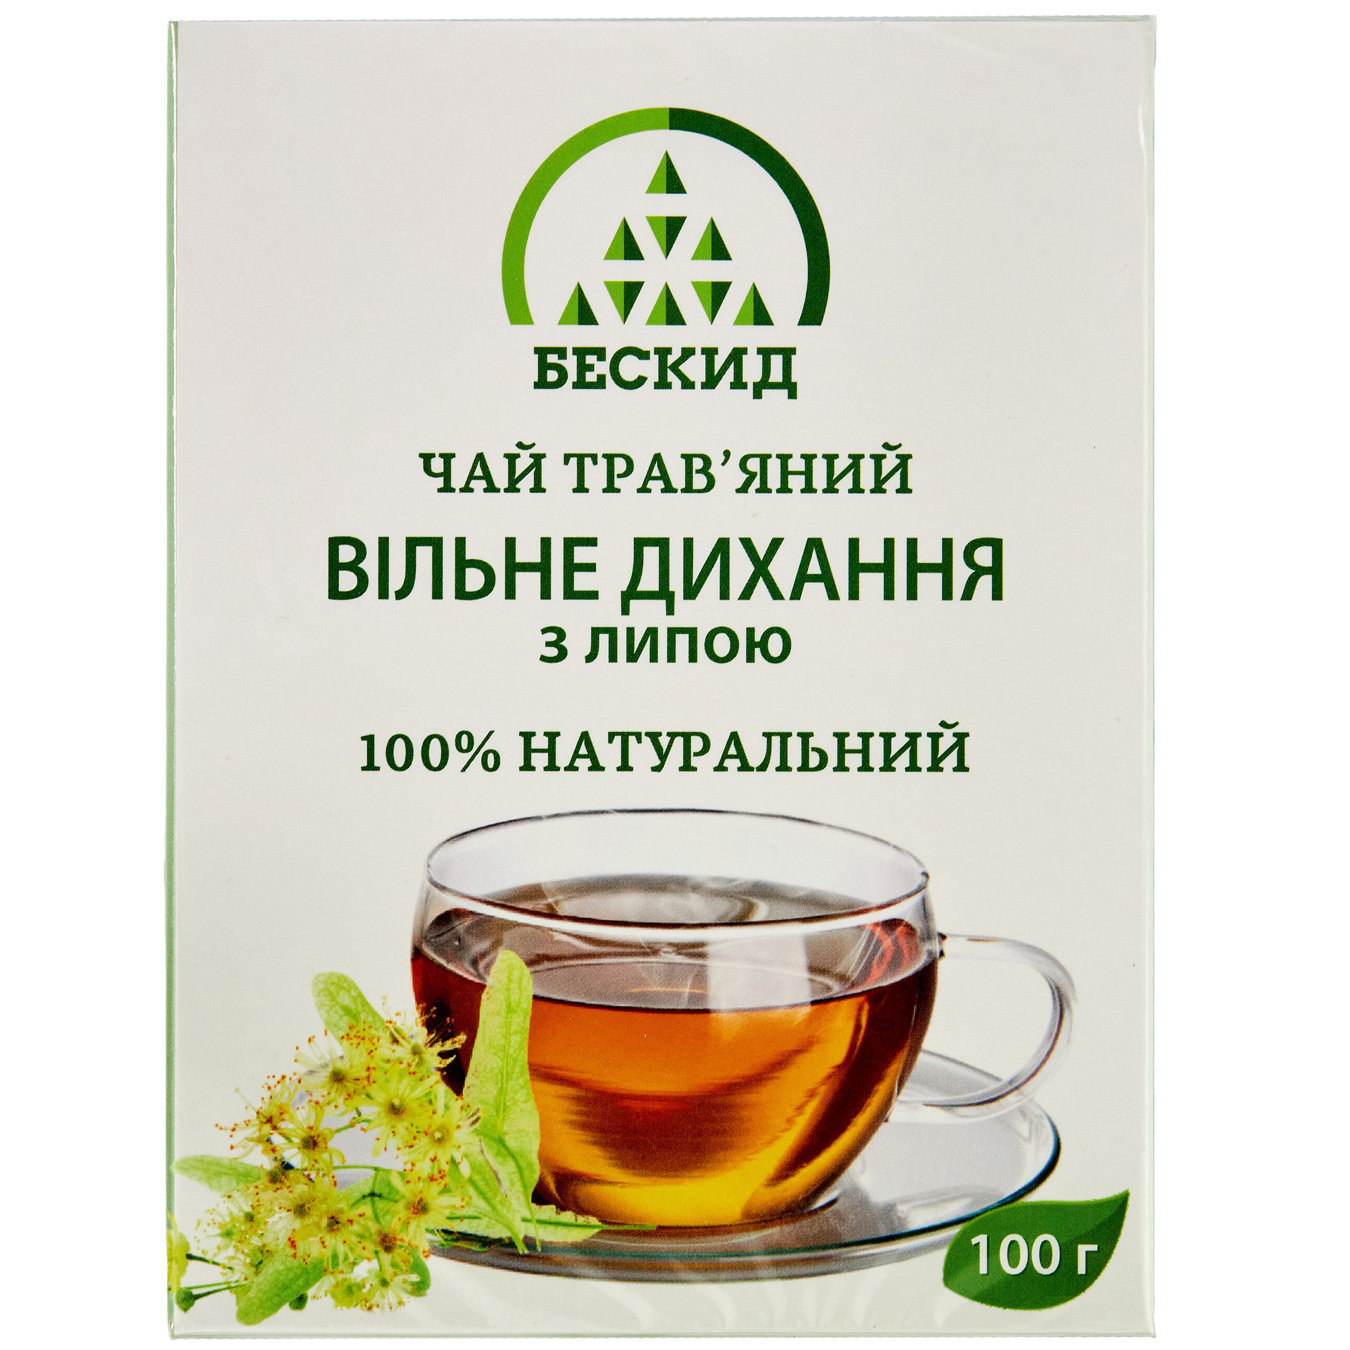 Beskyd Free Breathing Herbal Tea with a Linden Tree 100g